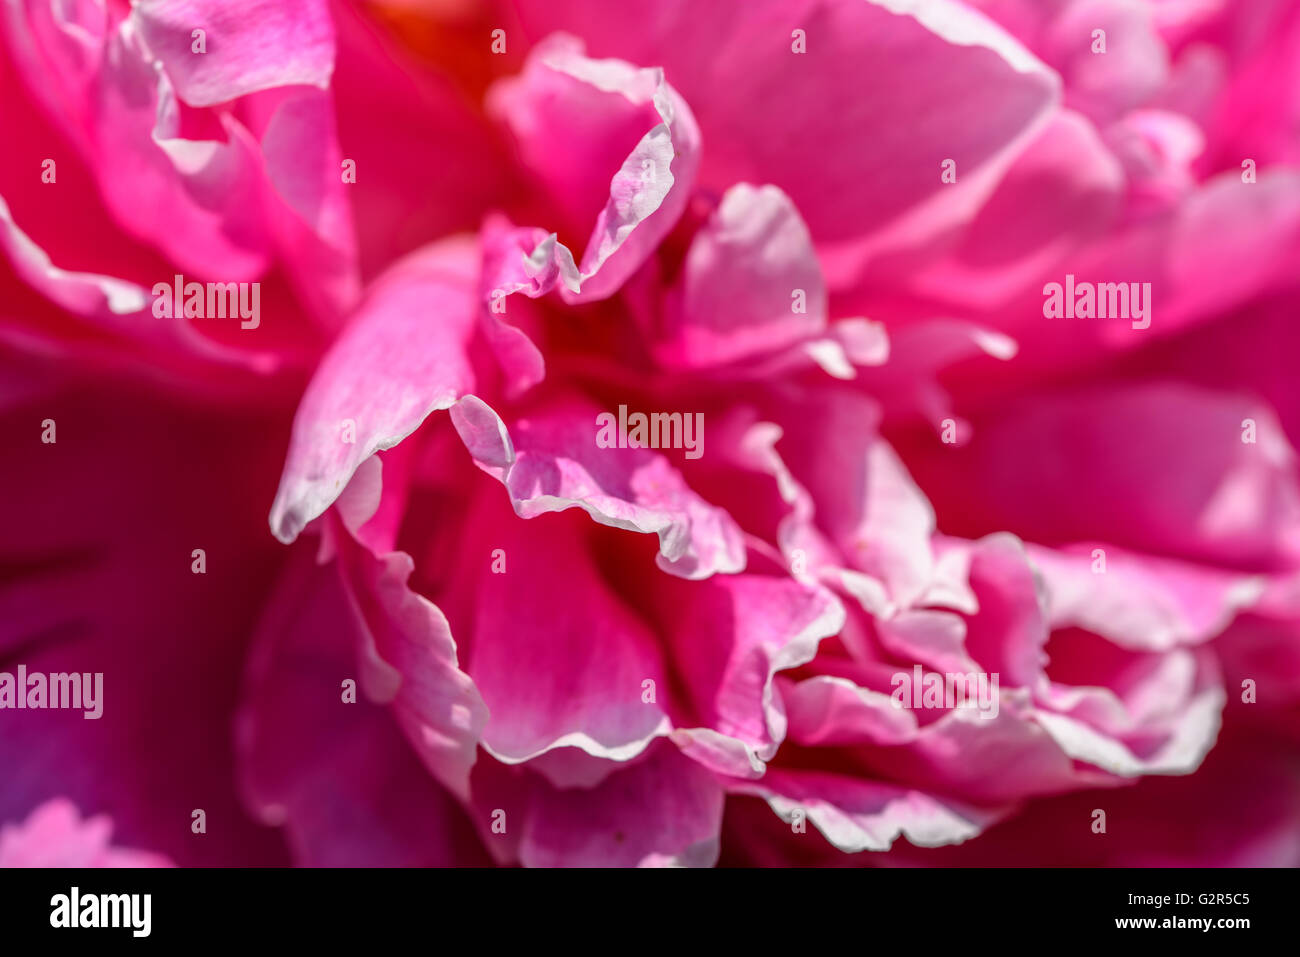 Pink Peony (Paeonia) Flower Stock Photo